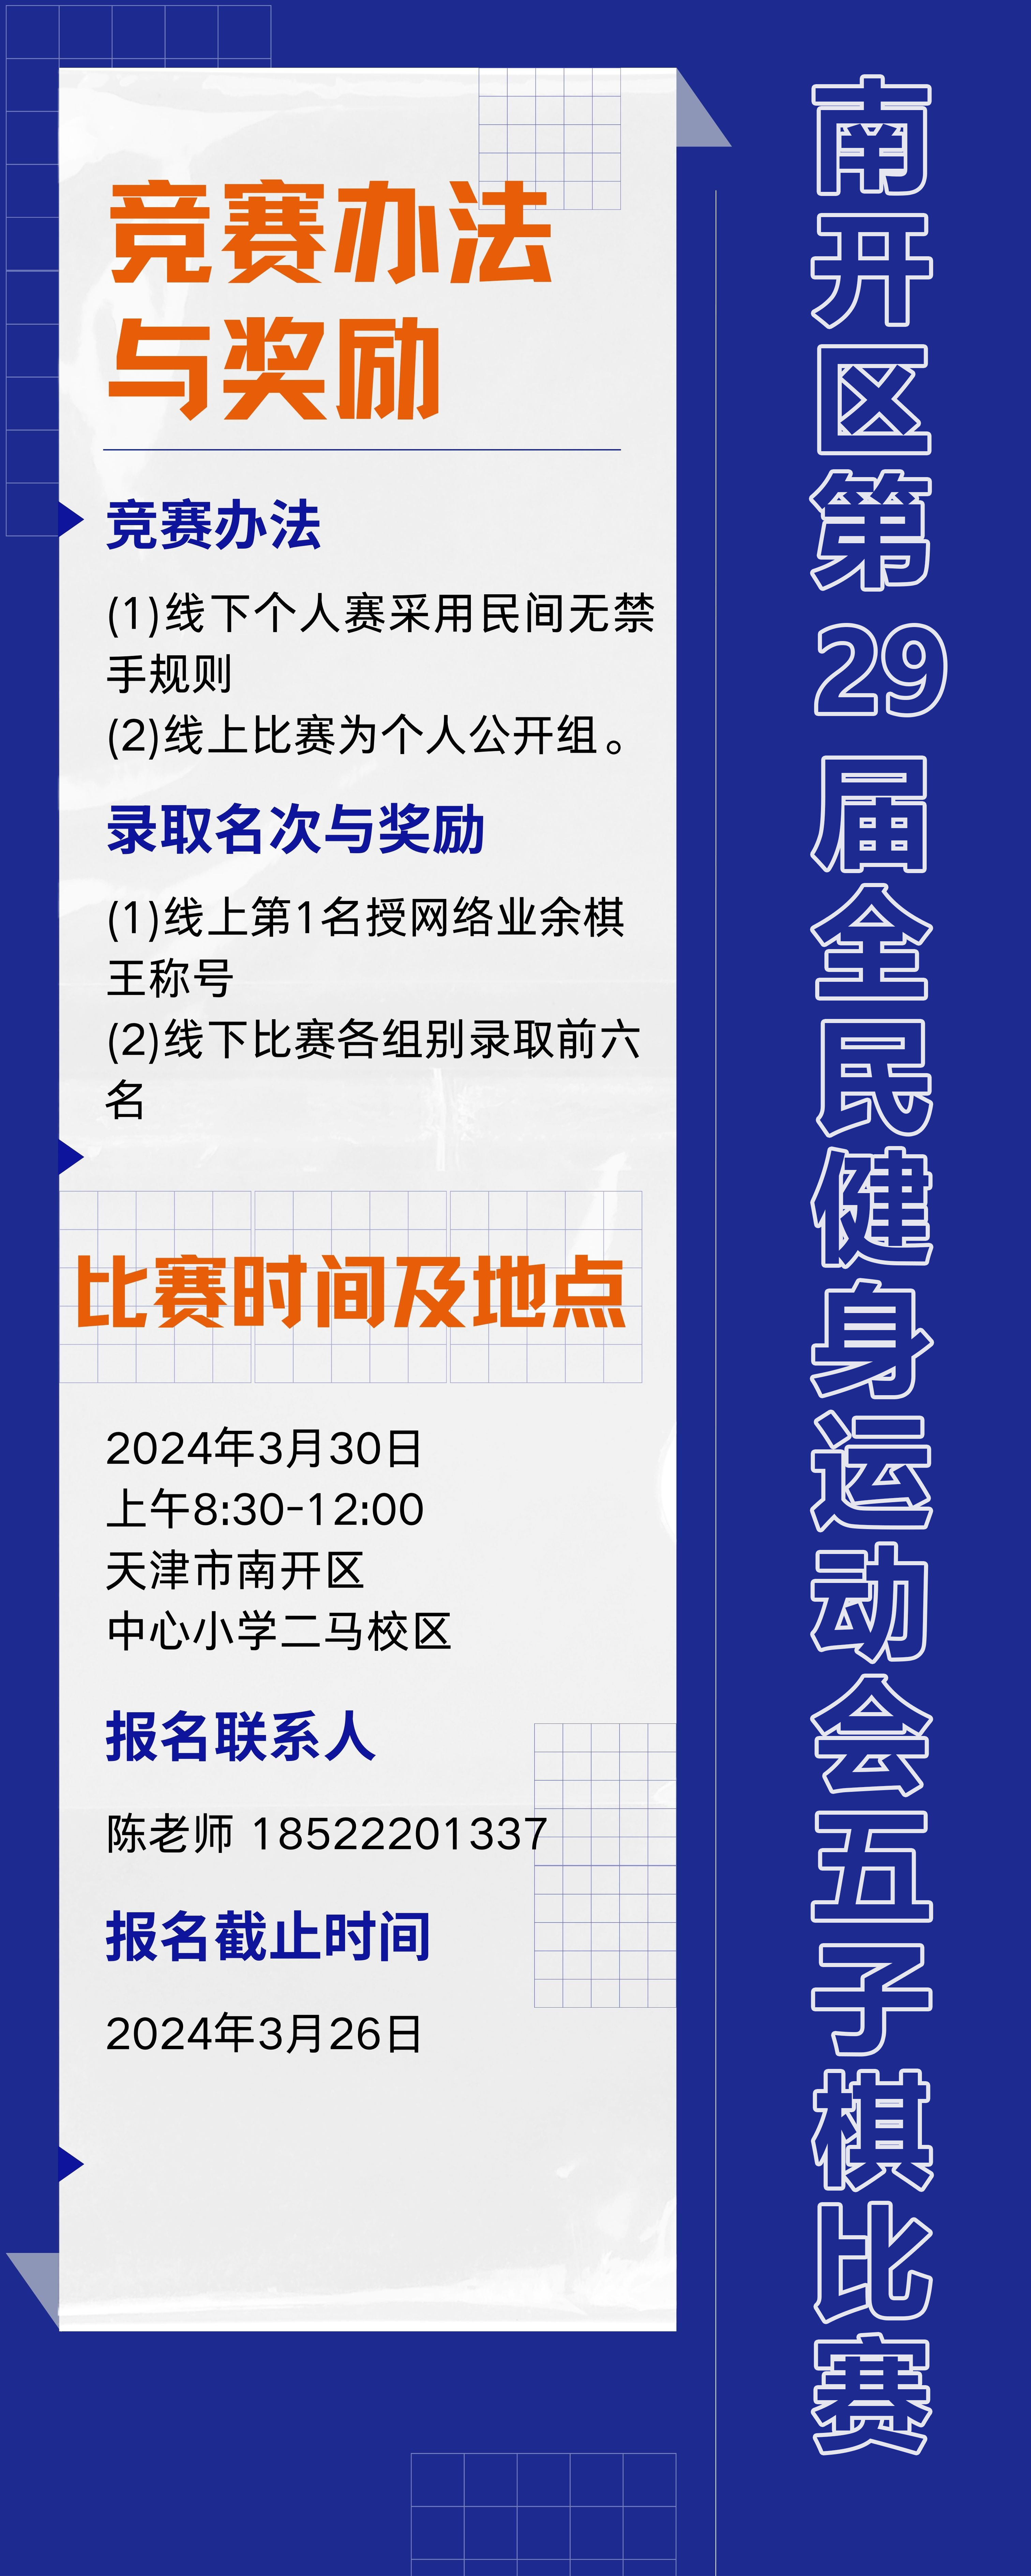 关于举办2024年天津市南开区第四届社区运动会暨南开区第29届全民健身运动会五子棋比赛的通知